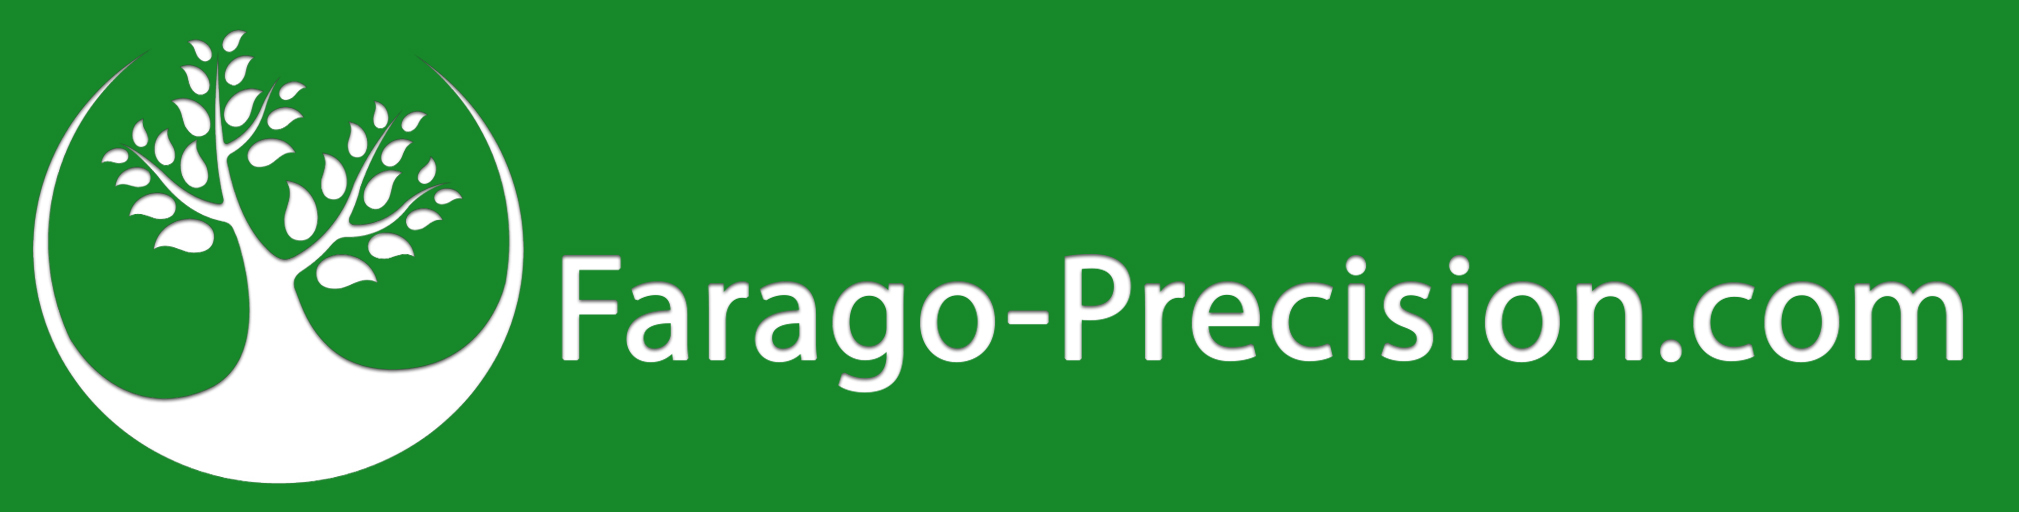 farago-precision.com